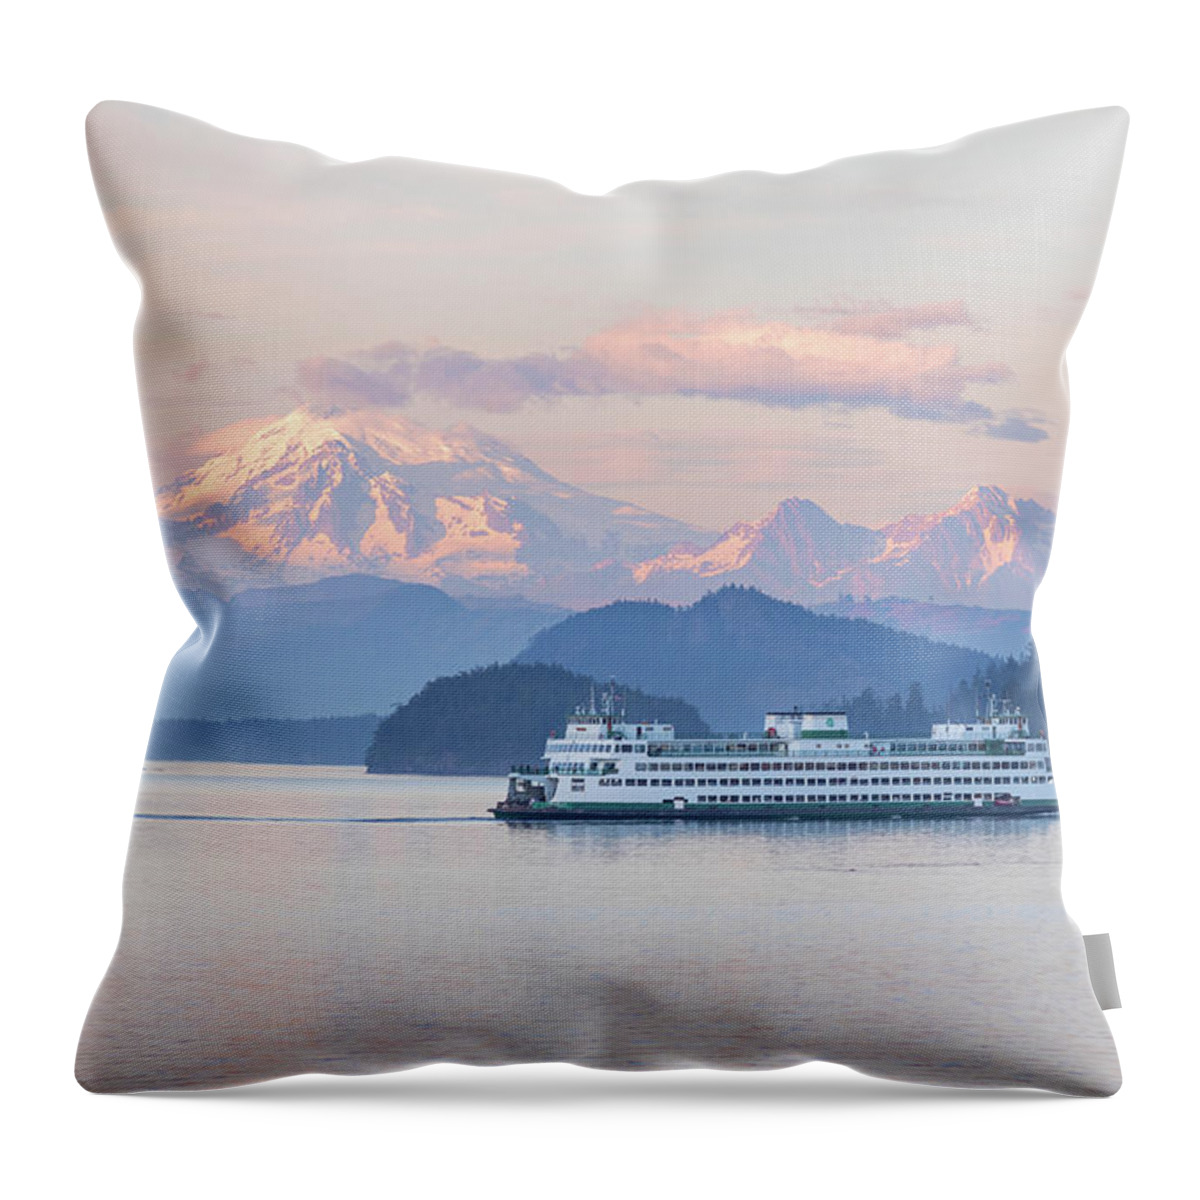 Mount Baker Throw Pillow featuring the photograph Mt. Baker Ferry Sunset by Michael Rauwolf